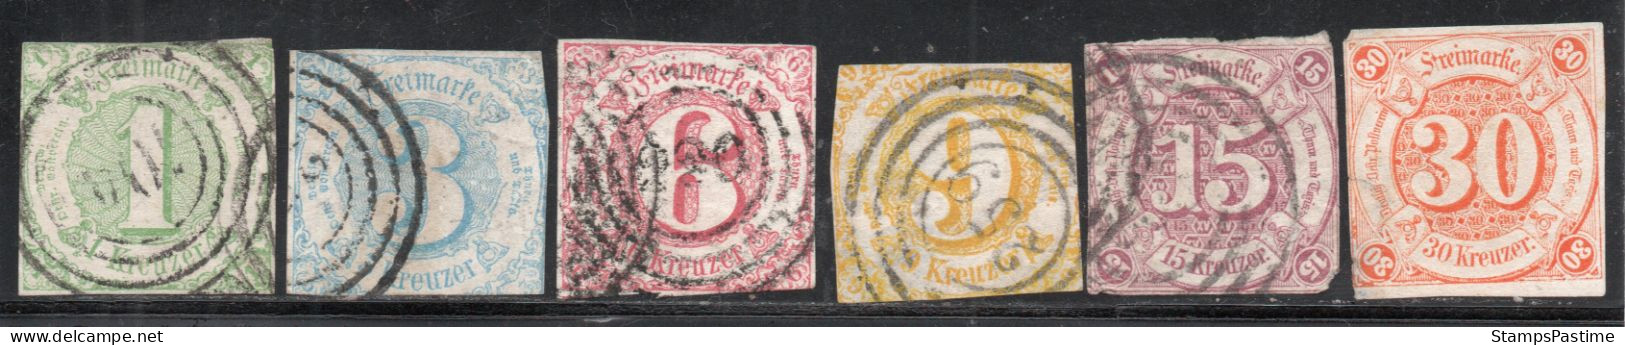 ALEMANIA – THURN Y TAXIS SUR Serie Completa X 6 Sellos Usados CIFRAS Año 1859 – Valorizada En Catálogo € 374,25 - Afgestempeld